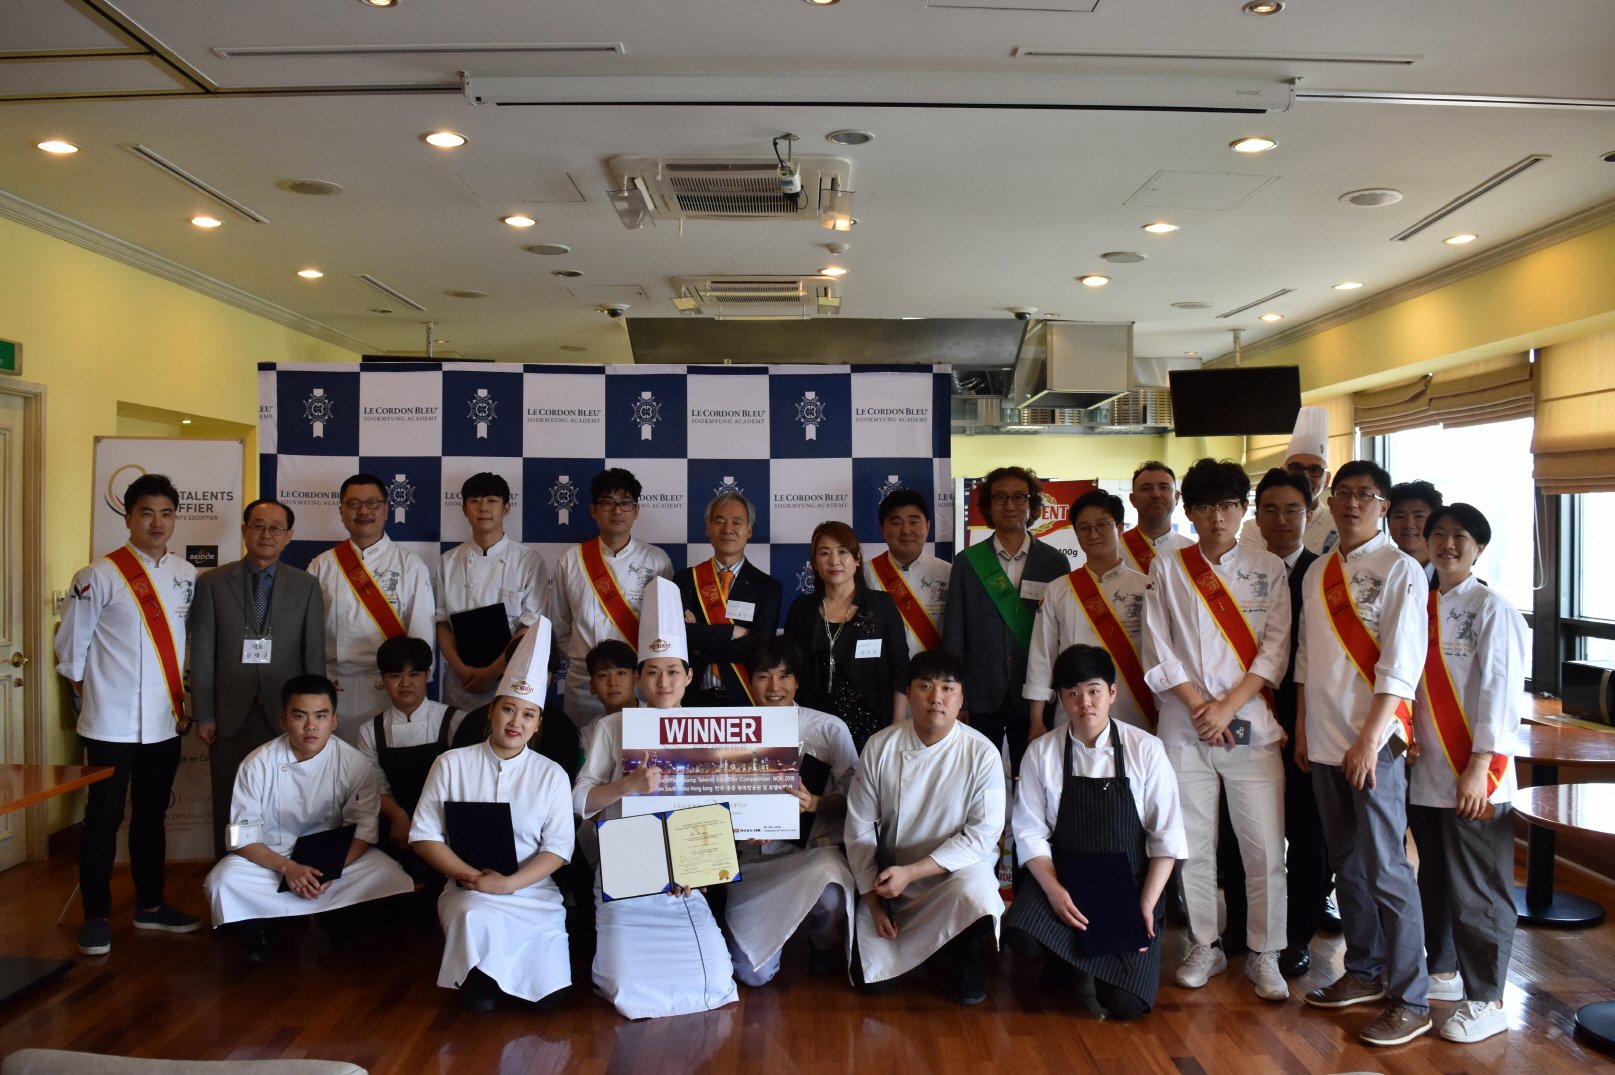 요리 배운지 1년, 국제적인 프랑스 요리대회 한국 국가대표가 되다